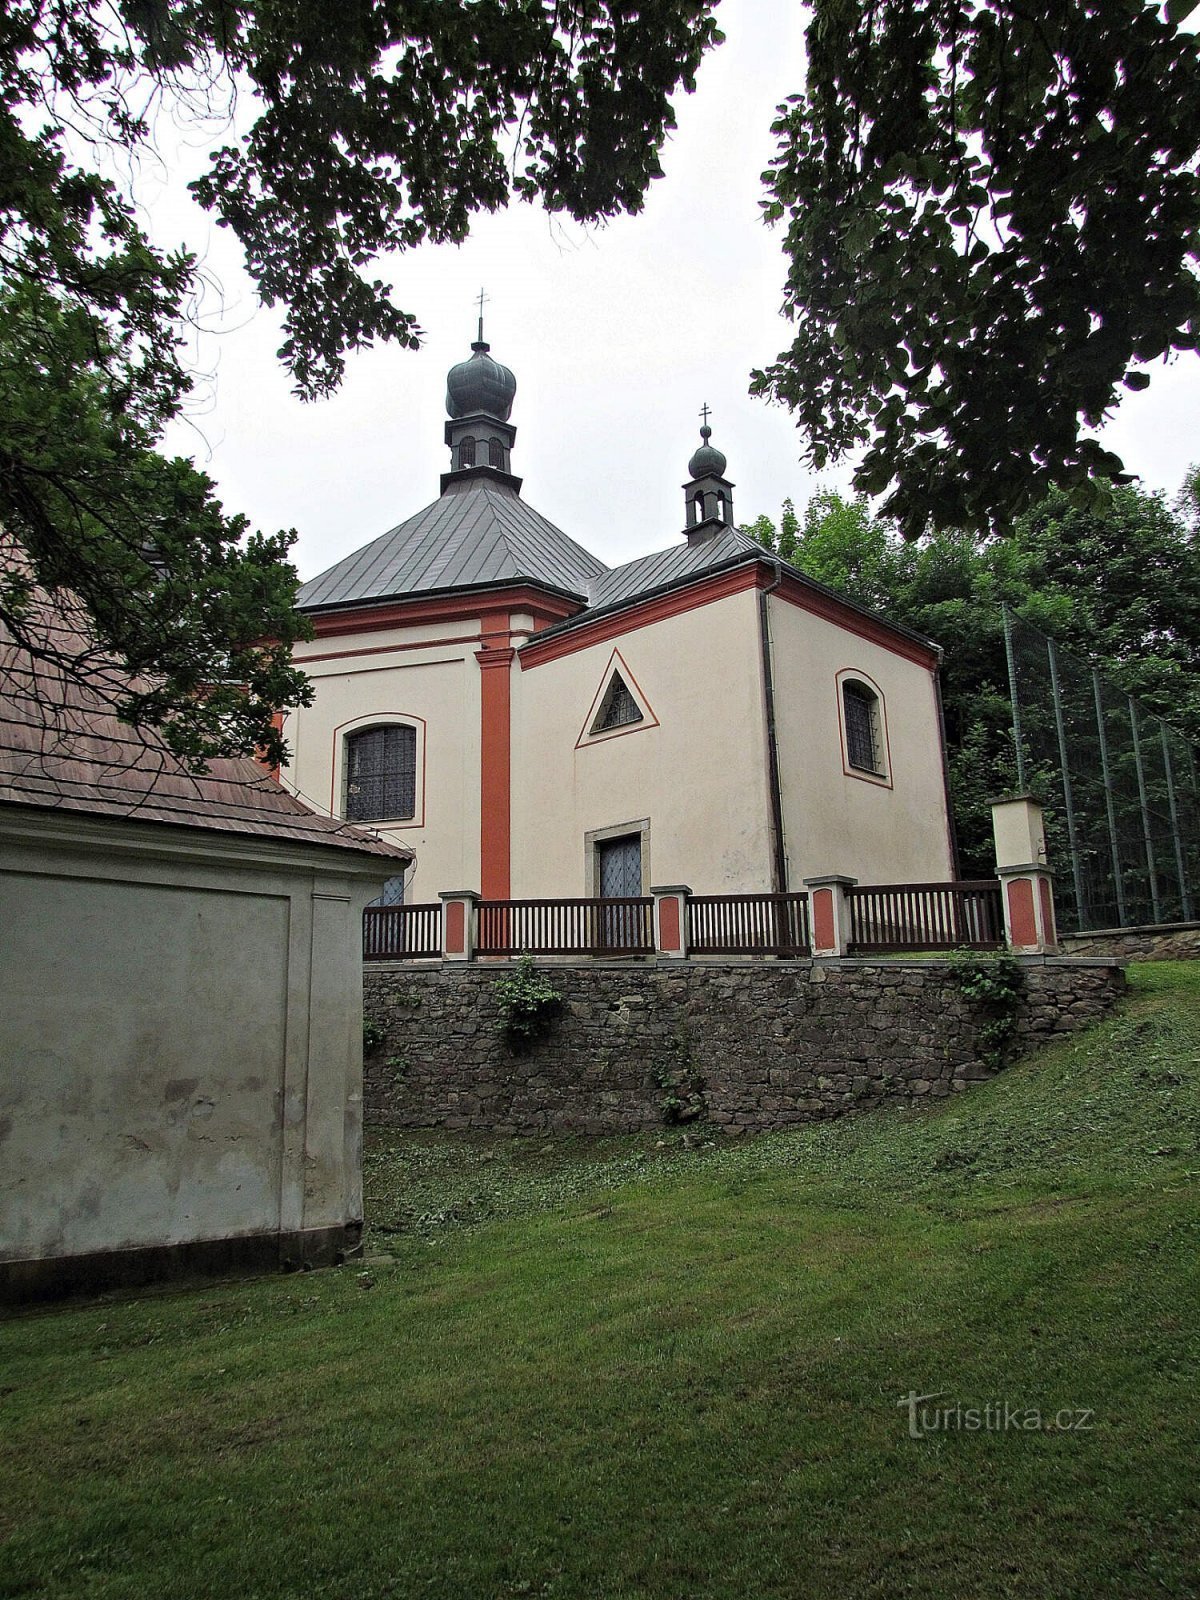 Havlíčkobrod katedral for den hellige treenighed